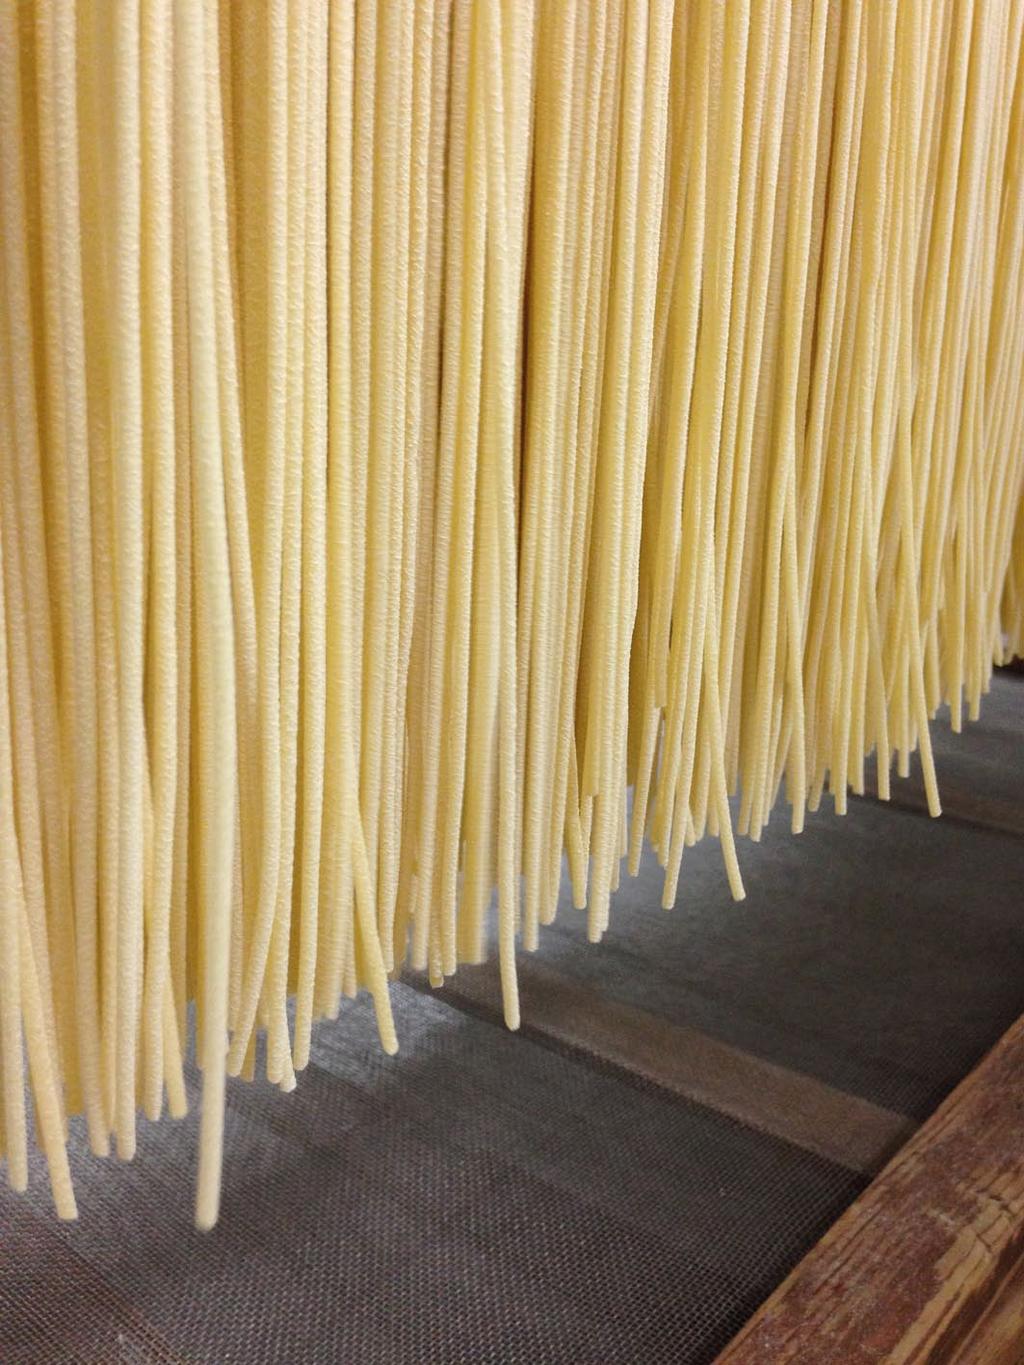 COSA FACCIAMO Il Pastificio Carmiano dedica la propria attenzione alla produzione di formati di pasta speciali, in semola di grano duro, trafilati al bronzo ed asciugati lentamente.